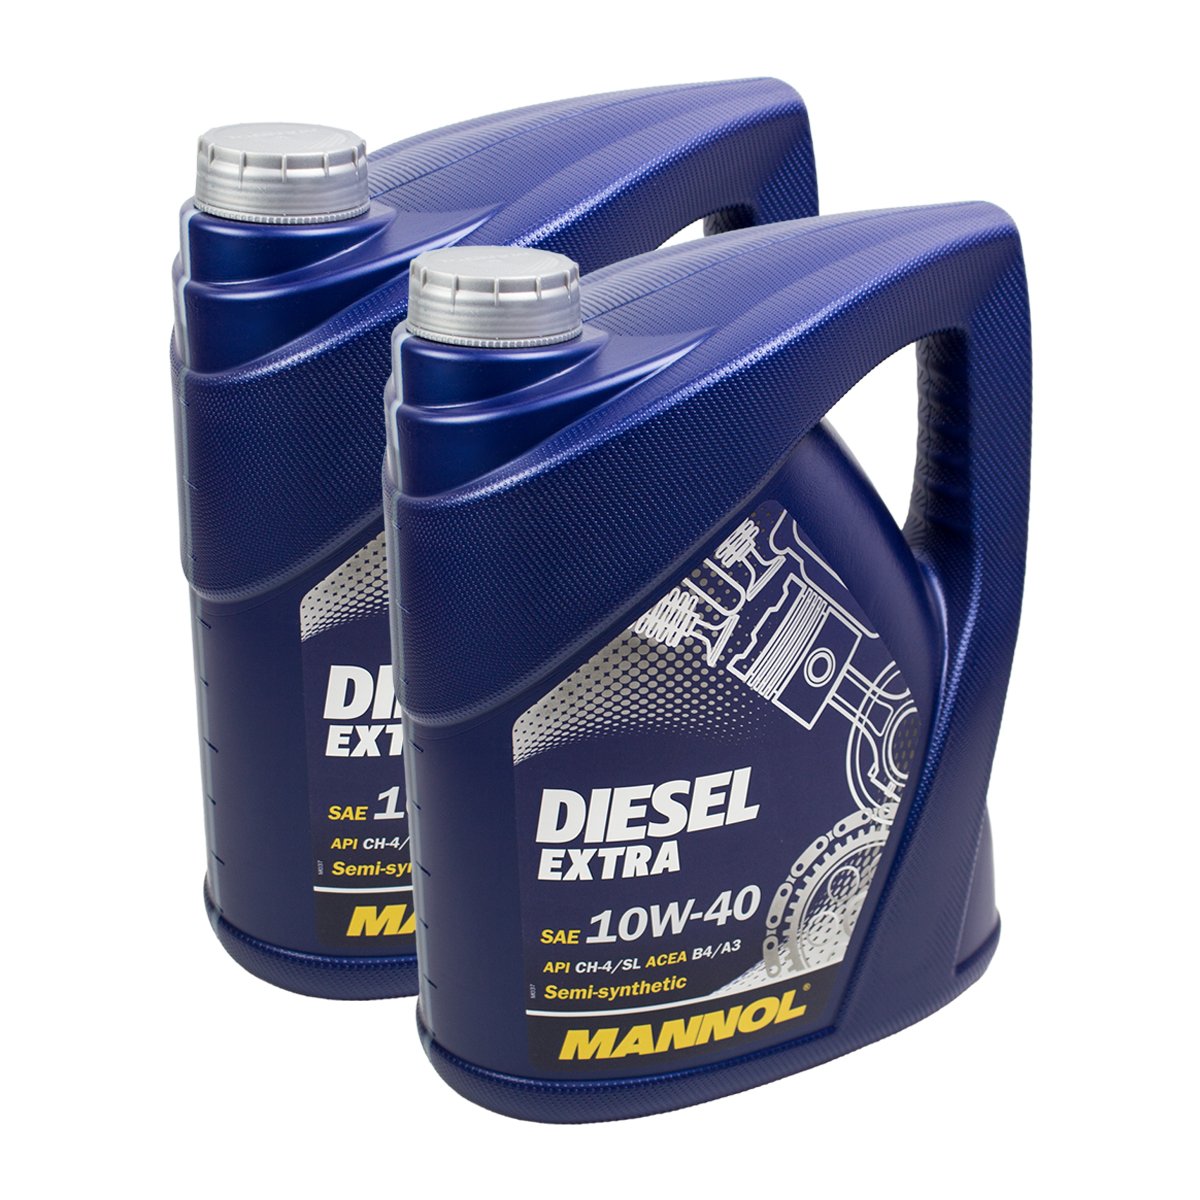 2X MANNOL MN7504-5 Diesel Extra 10W-40 Motoröl API CH-4/SL 5L von MANNOL_bundle